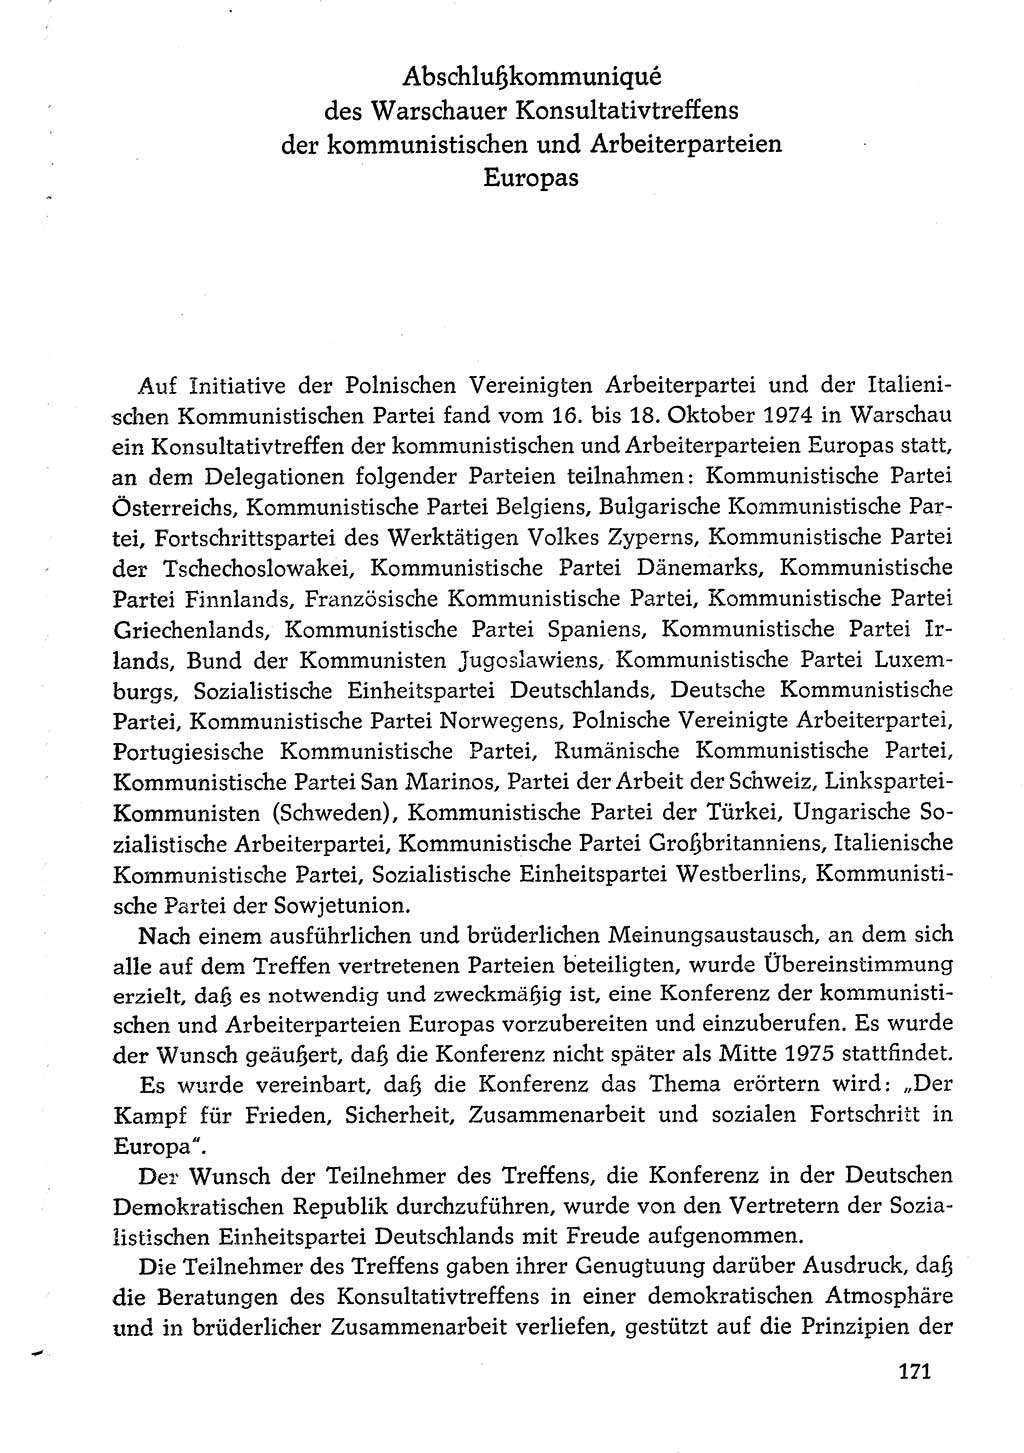 Dokumente der Sozialistischen Einheitspartei Deutschlands (SED) [Deutsche Demokratische Republik (DDR)] 1974-1975, Seite 171 (Dok. SED DDR 1978, Bd. ⅩⅤ, S. 171)